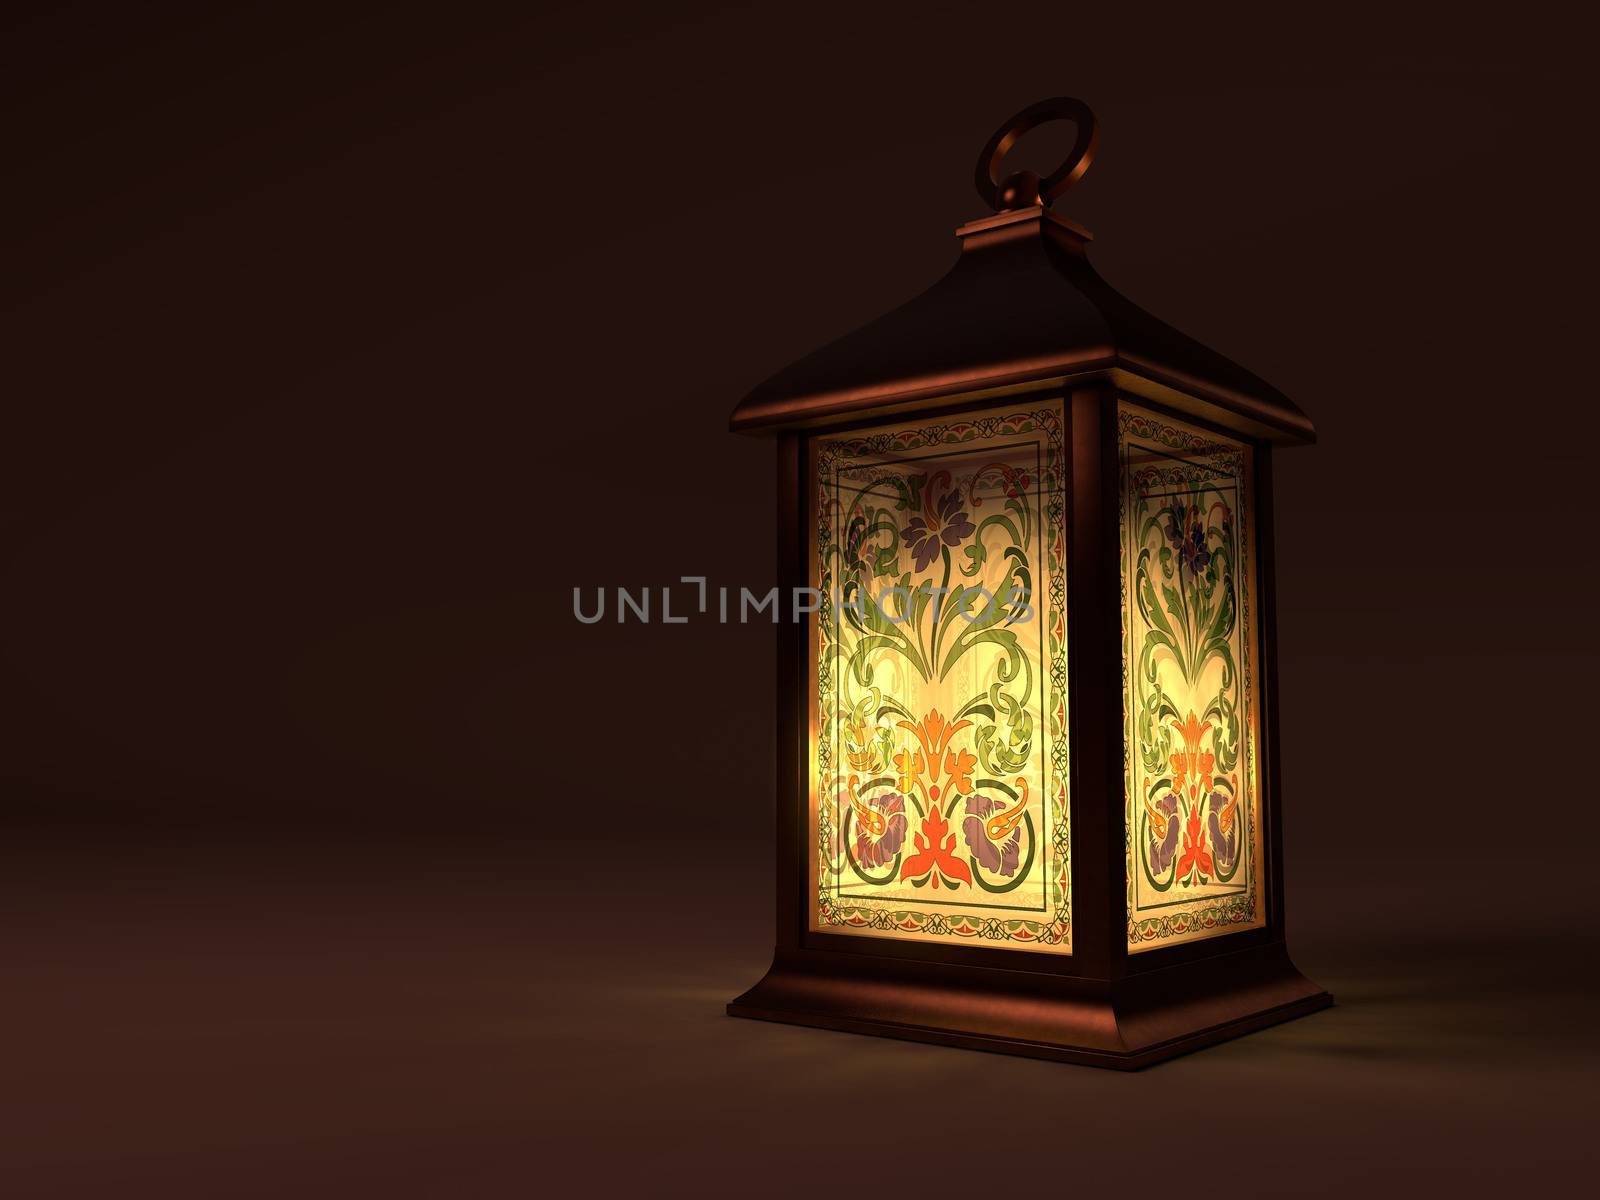 Vintage copper lantern on dark background by Polakx